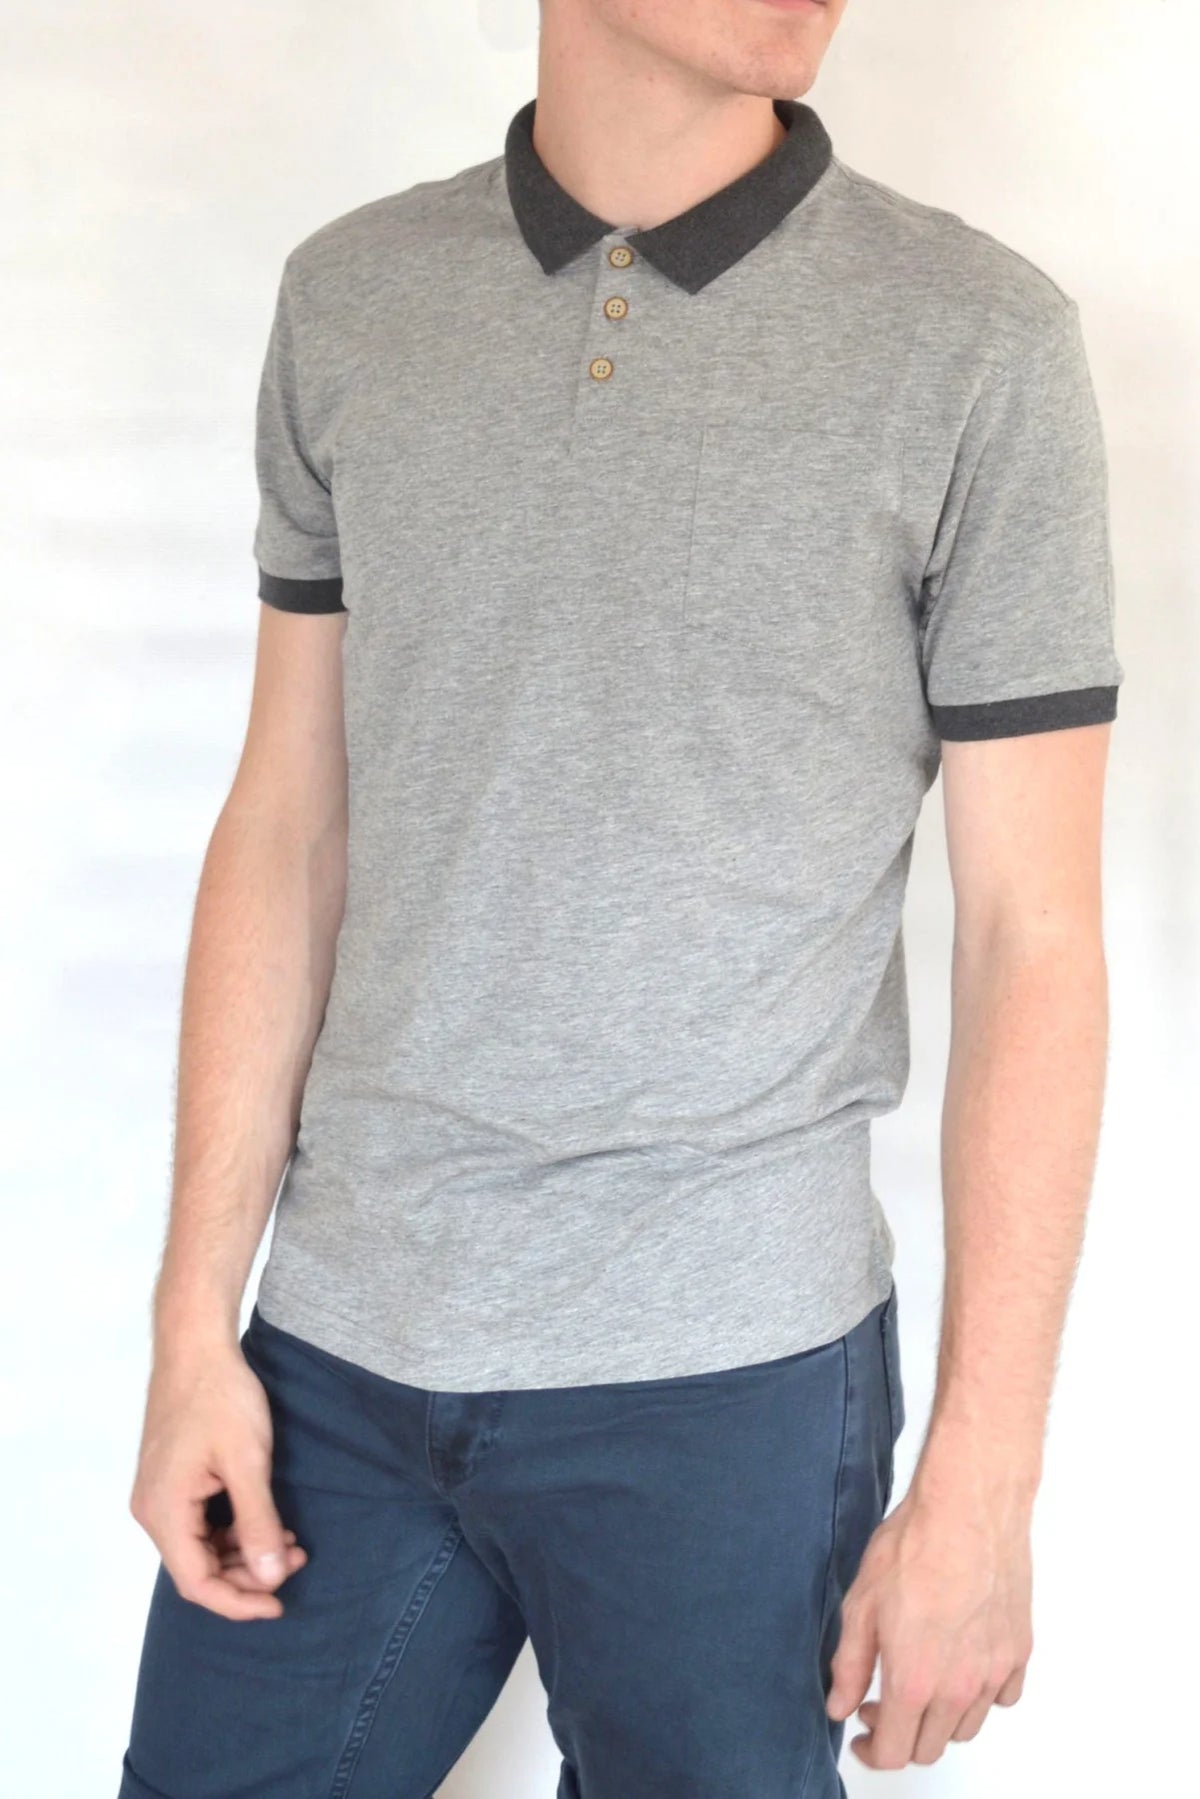 H&M Cotton Polo Shirt Contrast Collar Grey / S